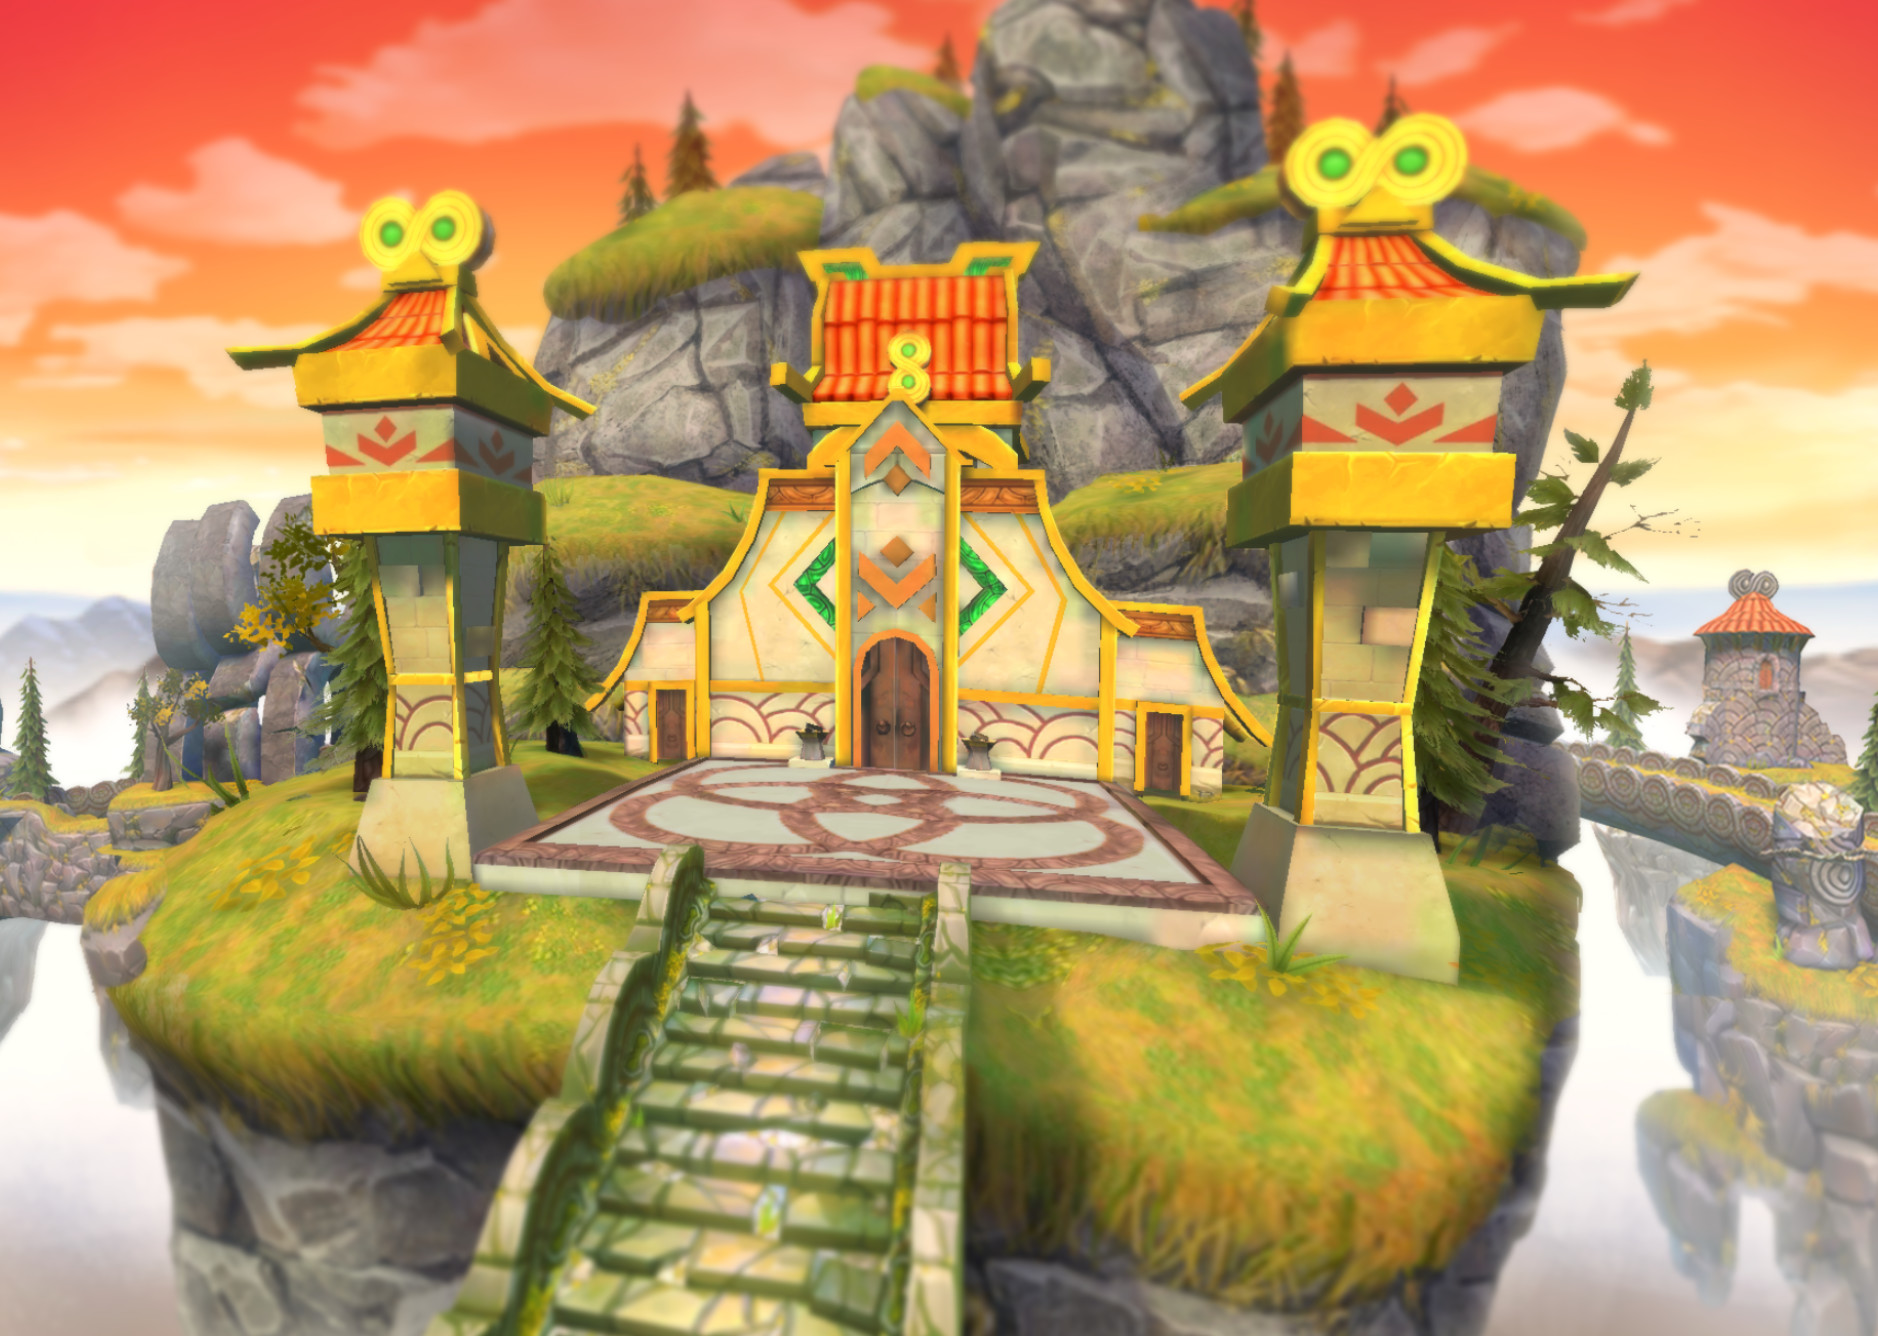 ArtStation - Temple Run: Treasure Hunters